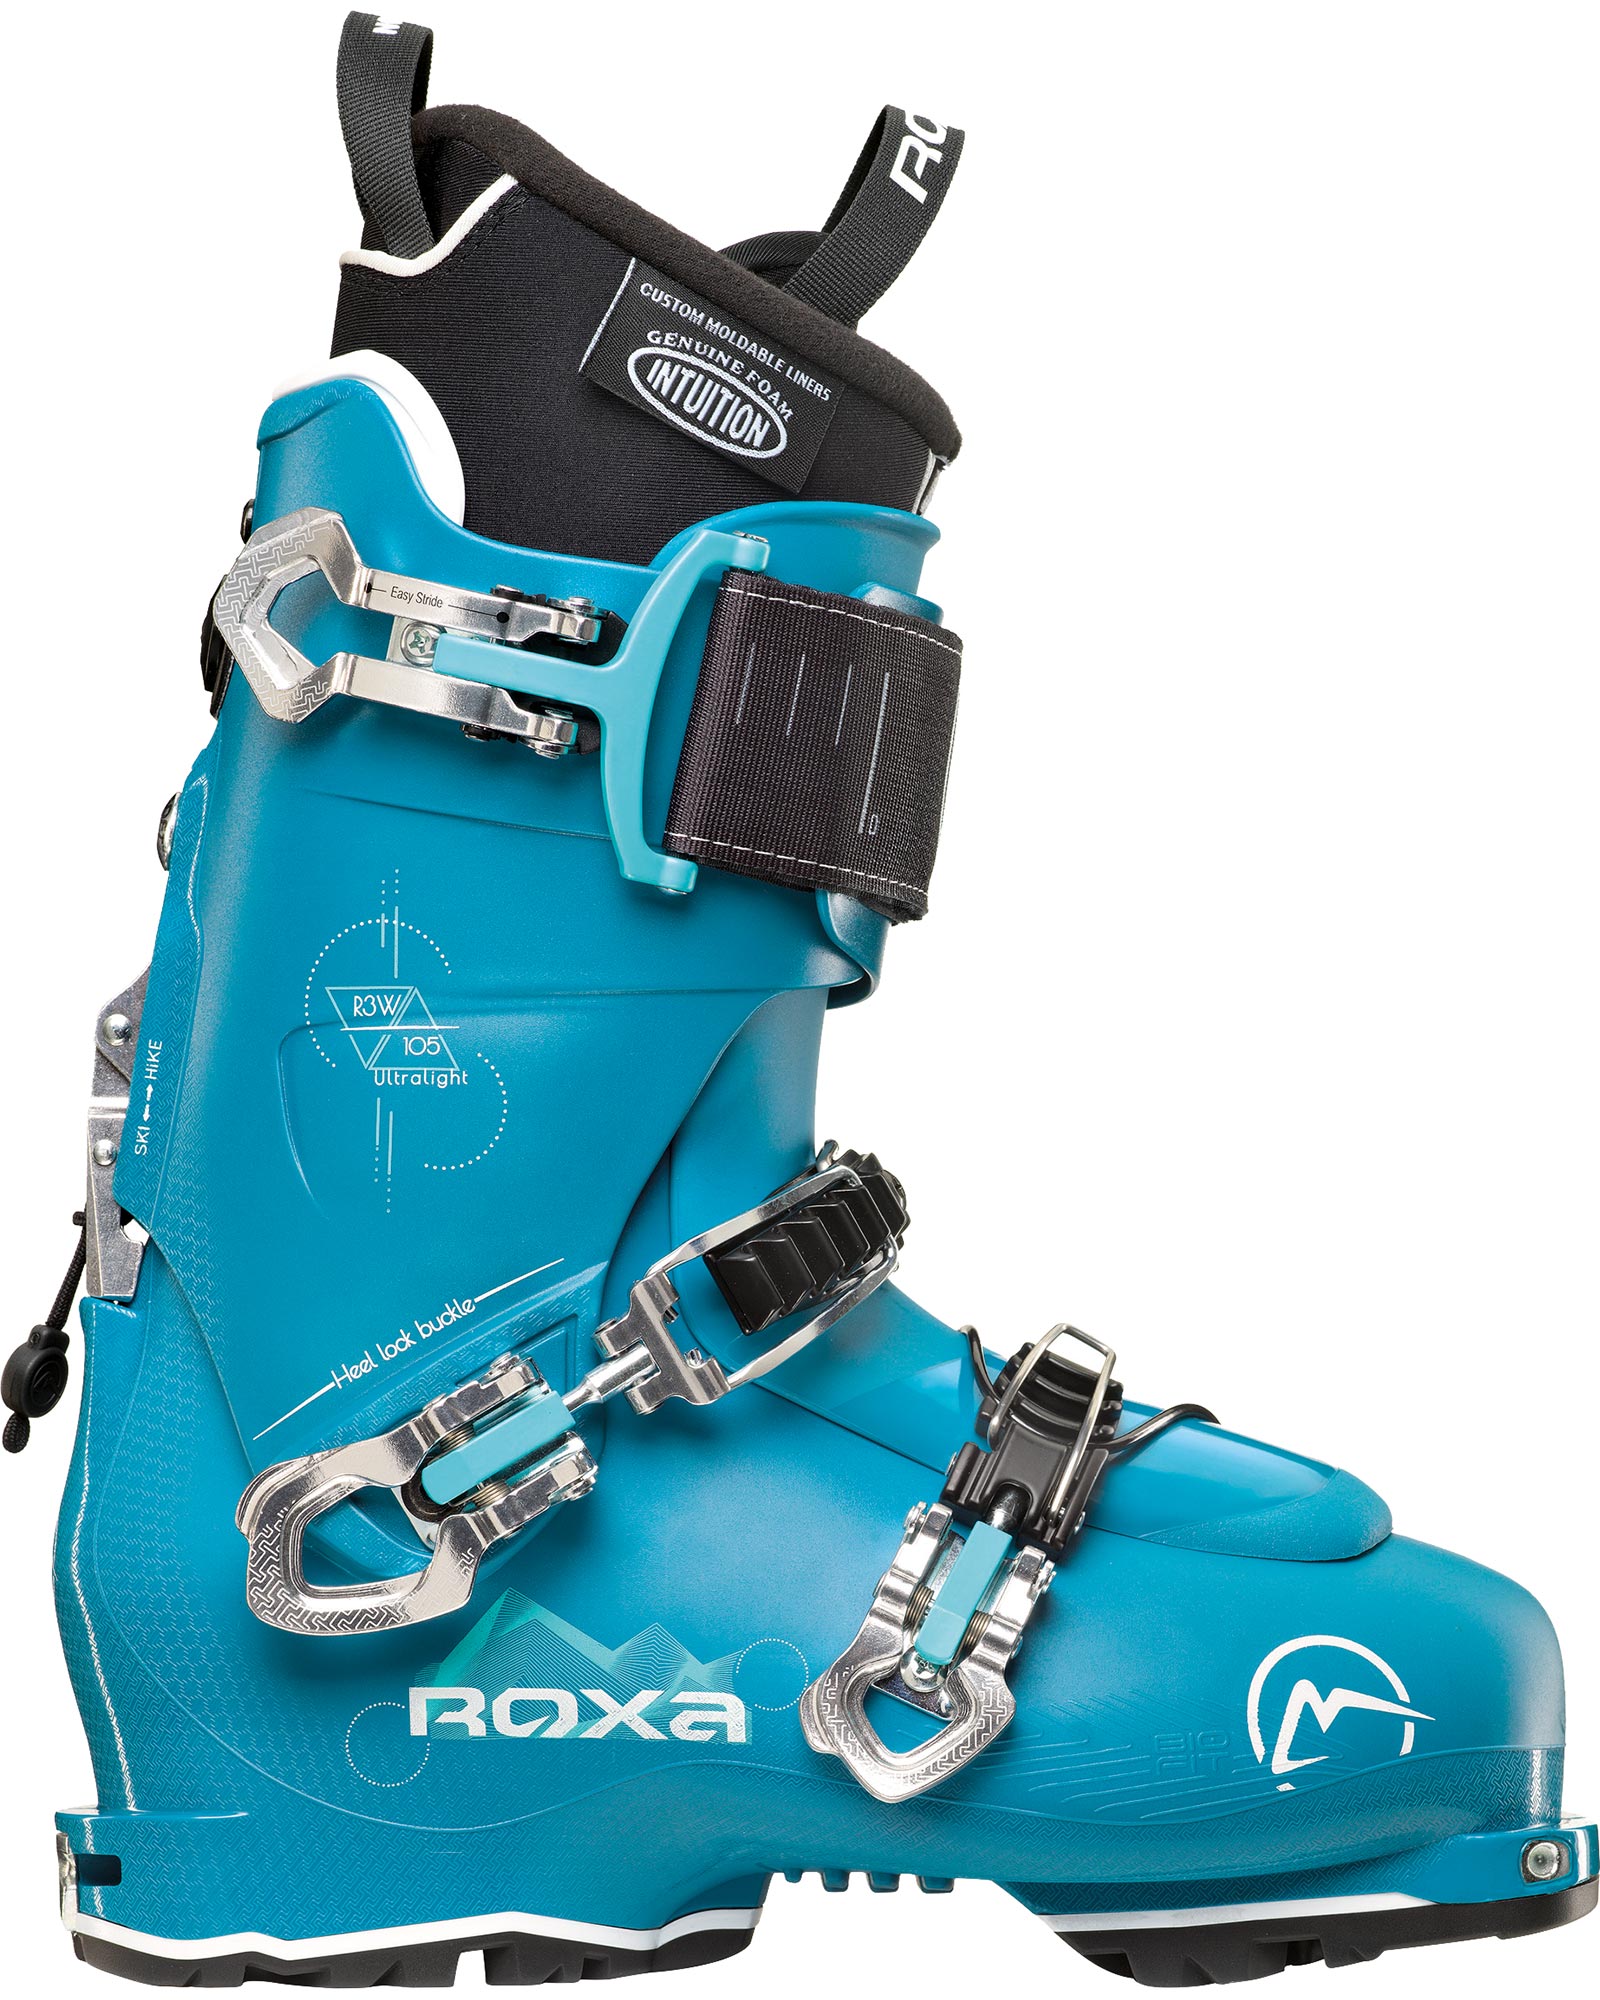 Roxa R3w 105 T.i. I.r. Gw Womens Ski Boots 2022